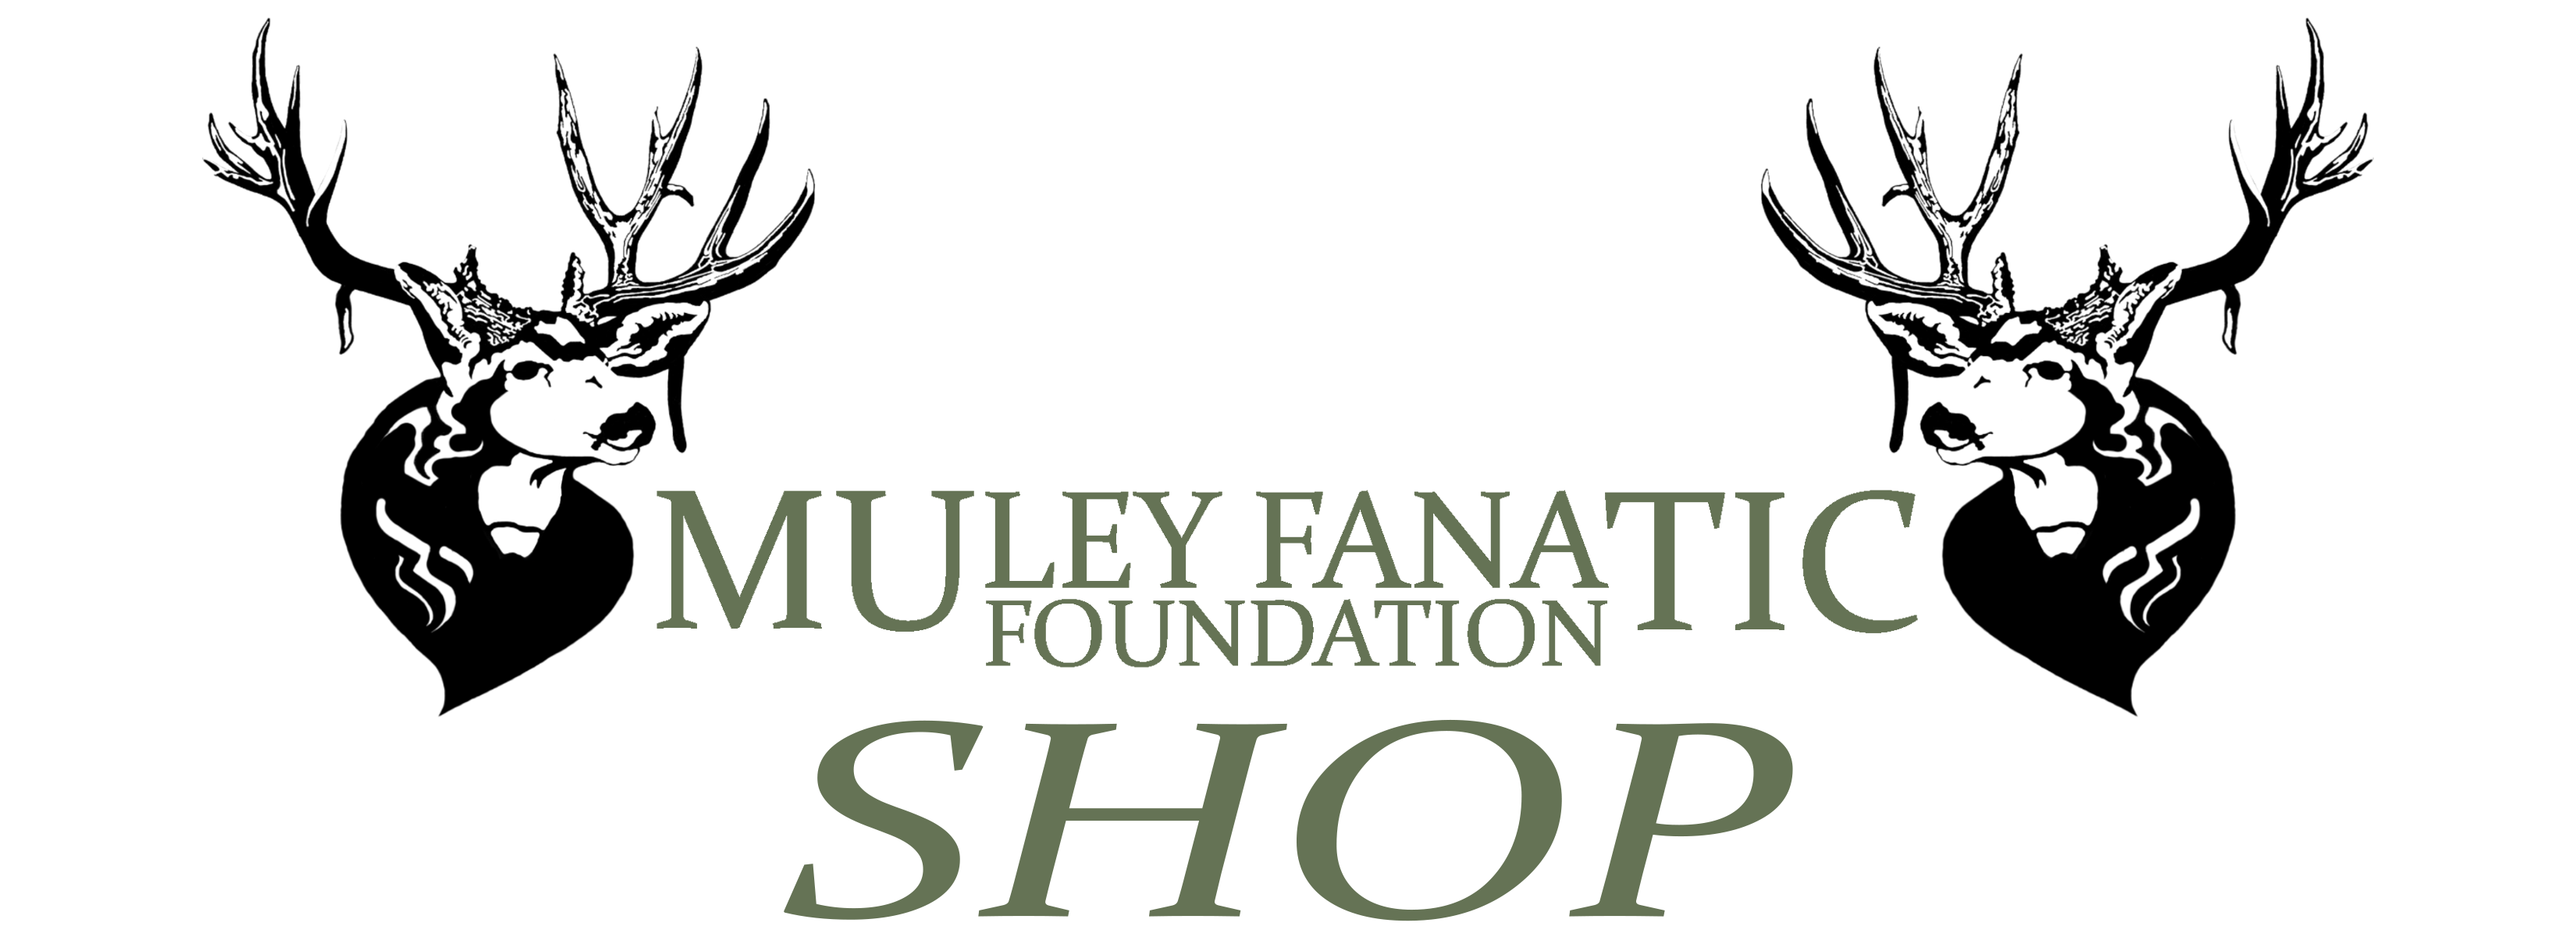 Muley Fanatic Foundation Store